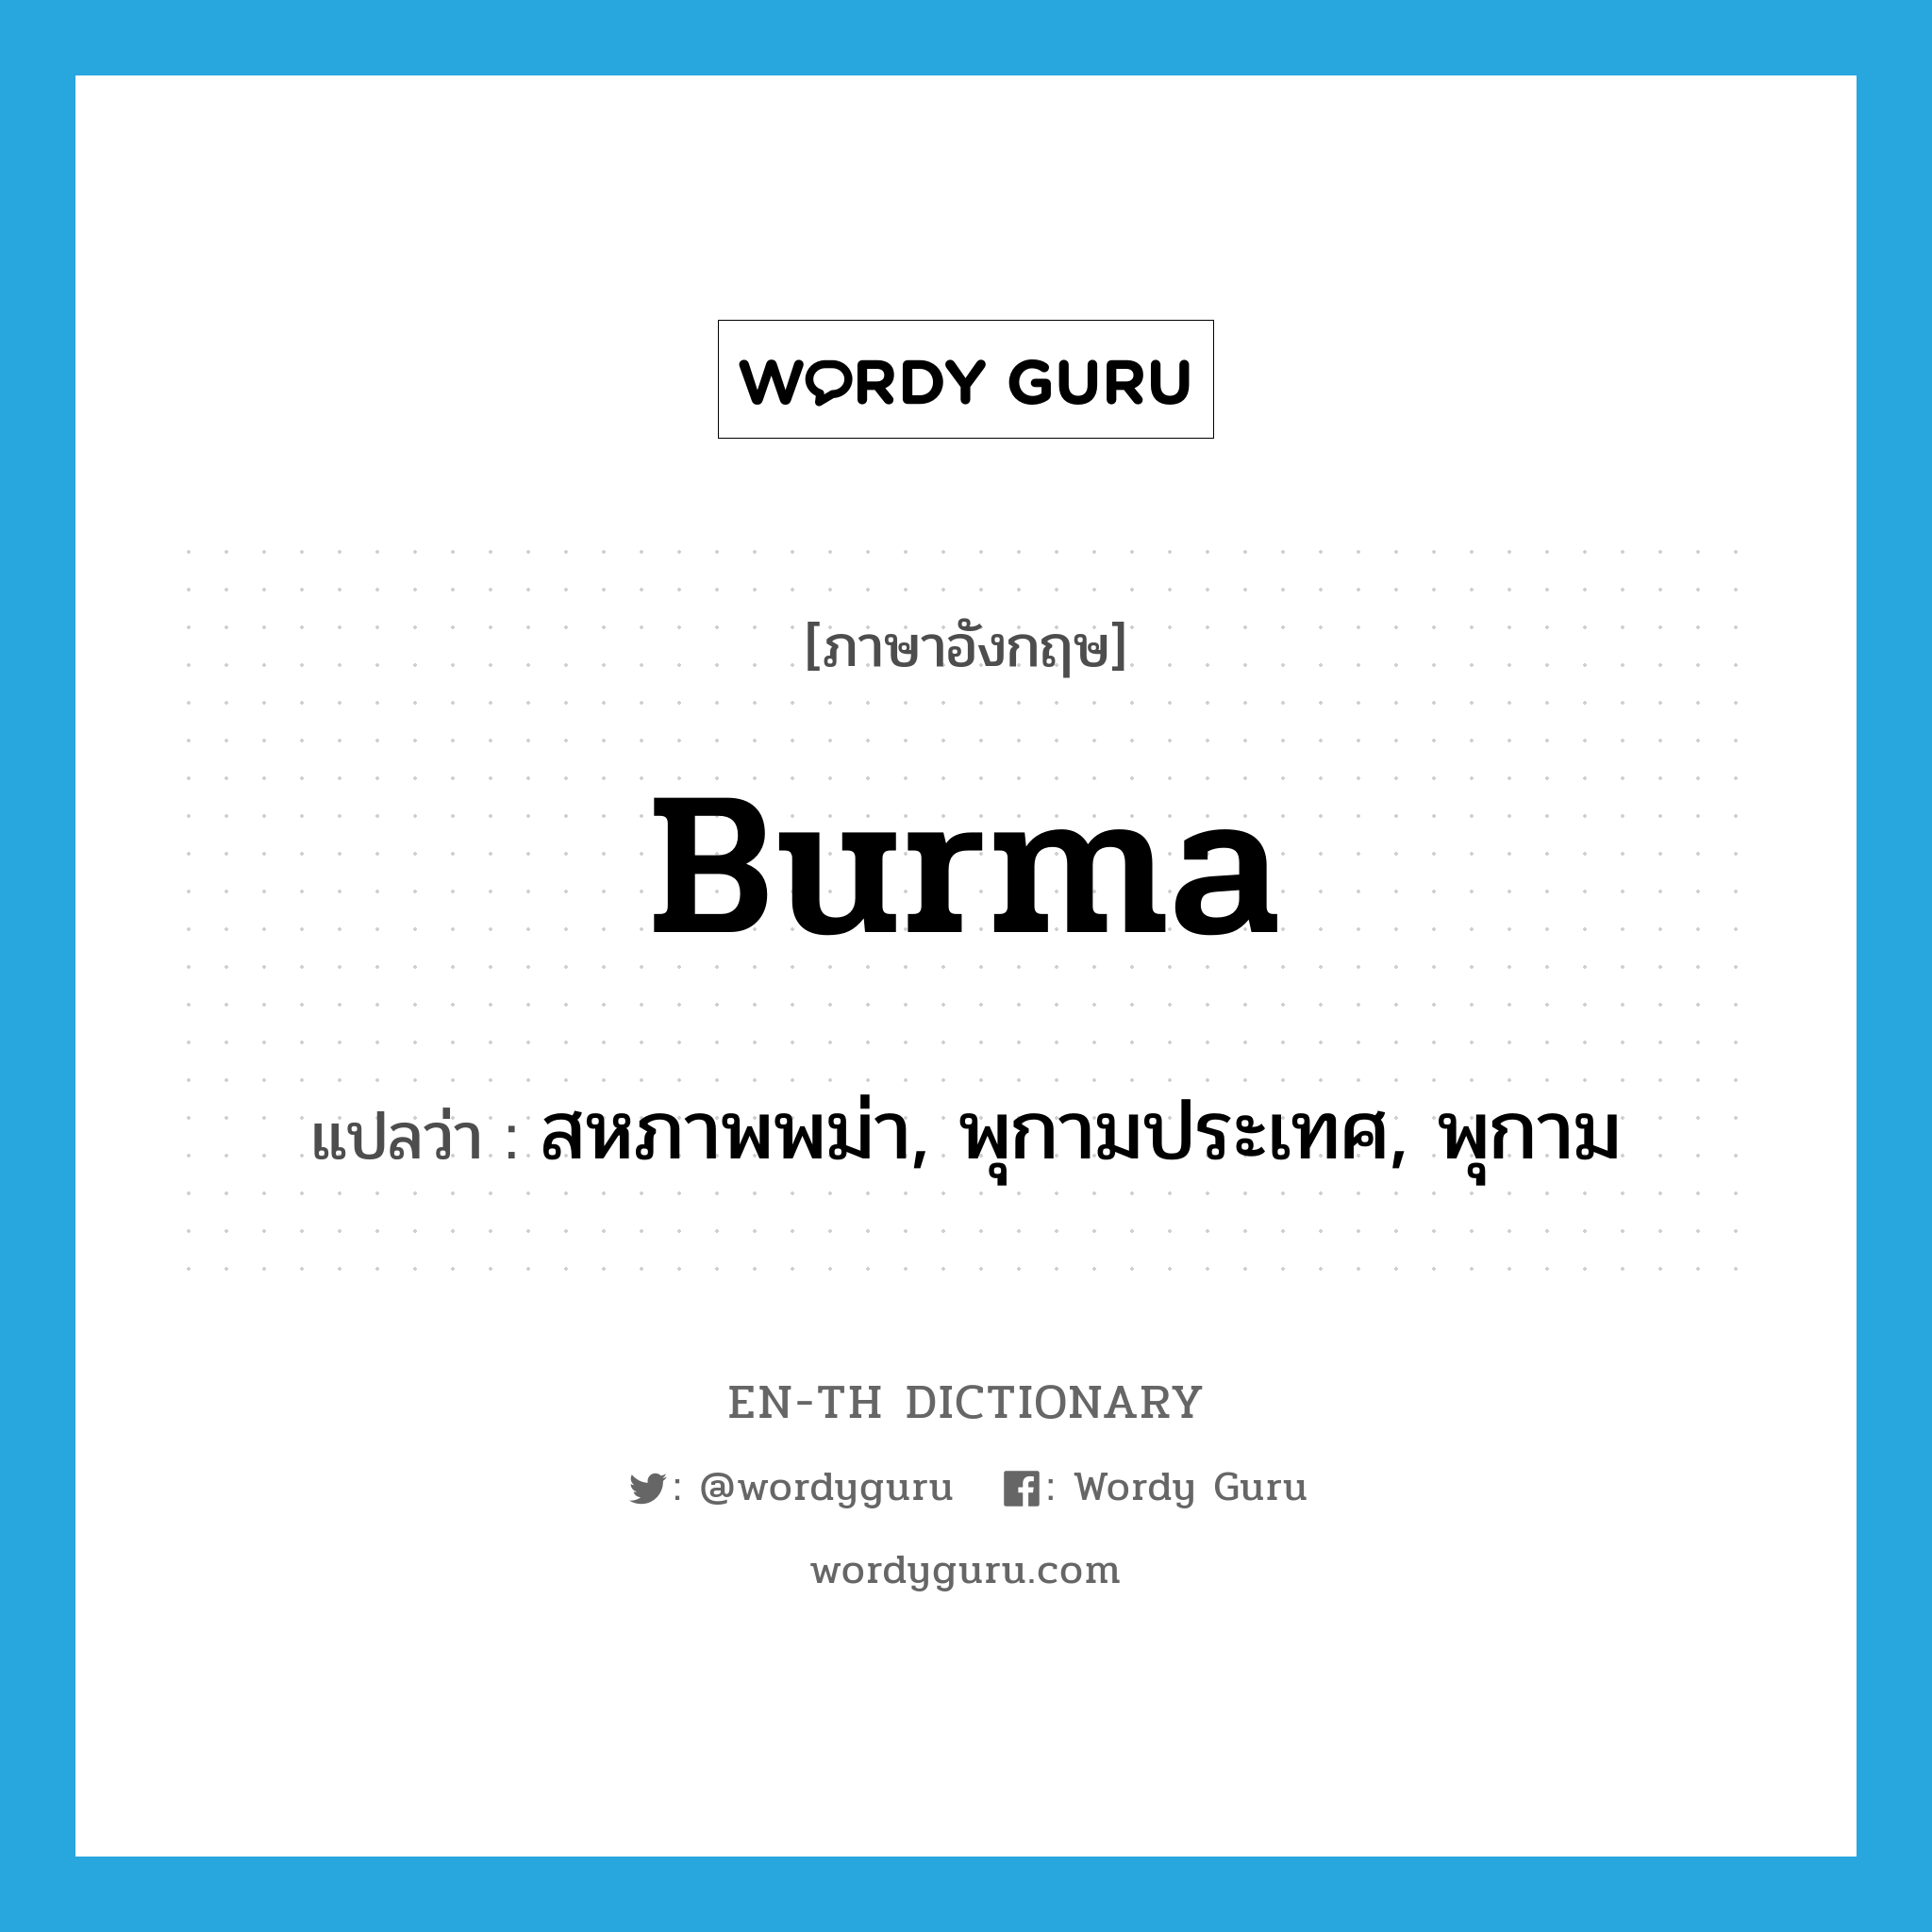 สหภาพพม่า, พุกามประเทศ, พุกาม ภาษาอังกฤษ?, คำศัพท์ภาษาอังกฤษ สหภาพพม่า, พุกามประเทศ, พุกาม แปลว่า Burma ประเภท N หมวด N